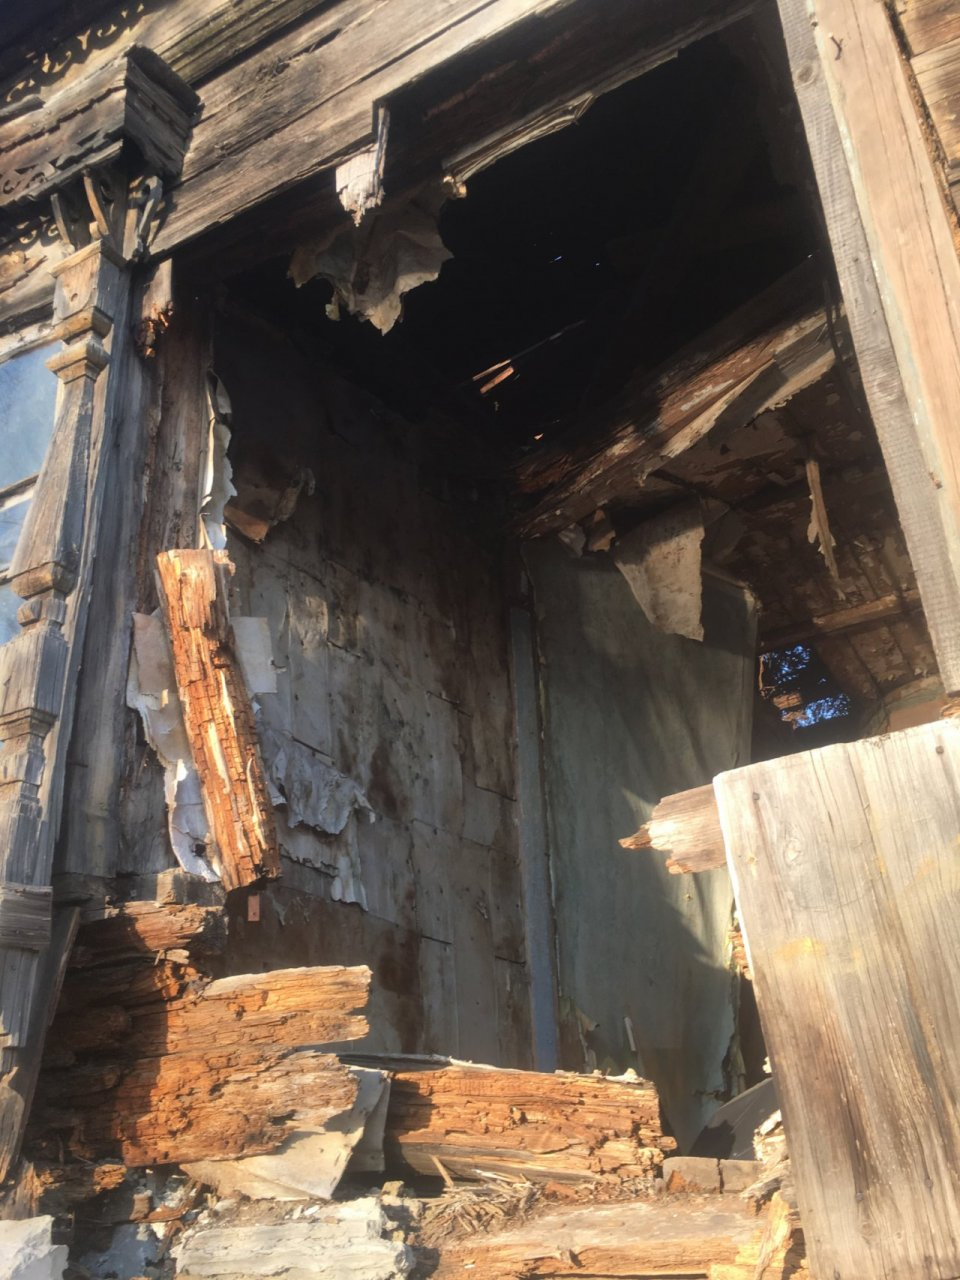 "Может быть пожар": пензенцы боятся за свою жизнь из-за заброшенного дома